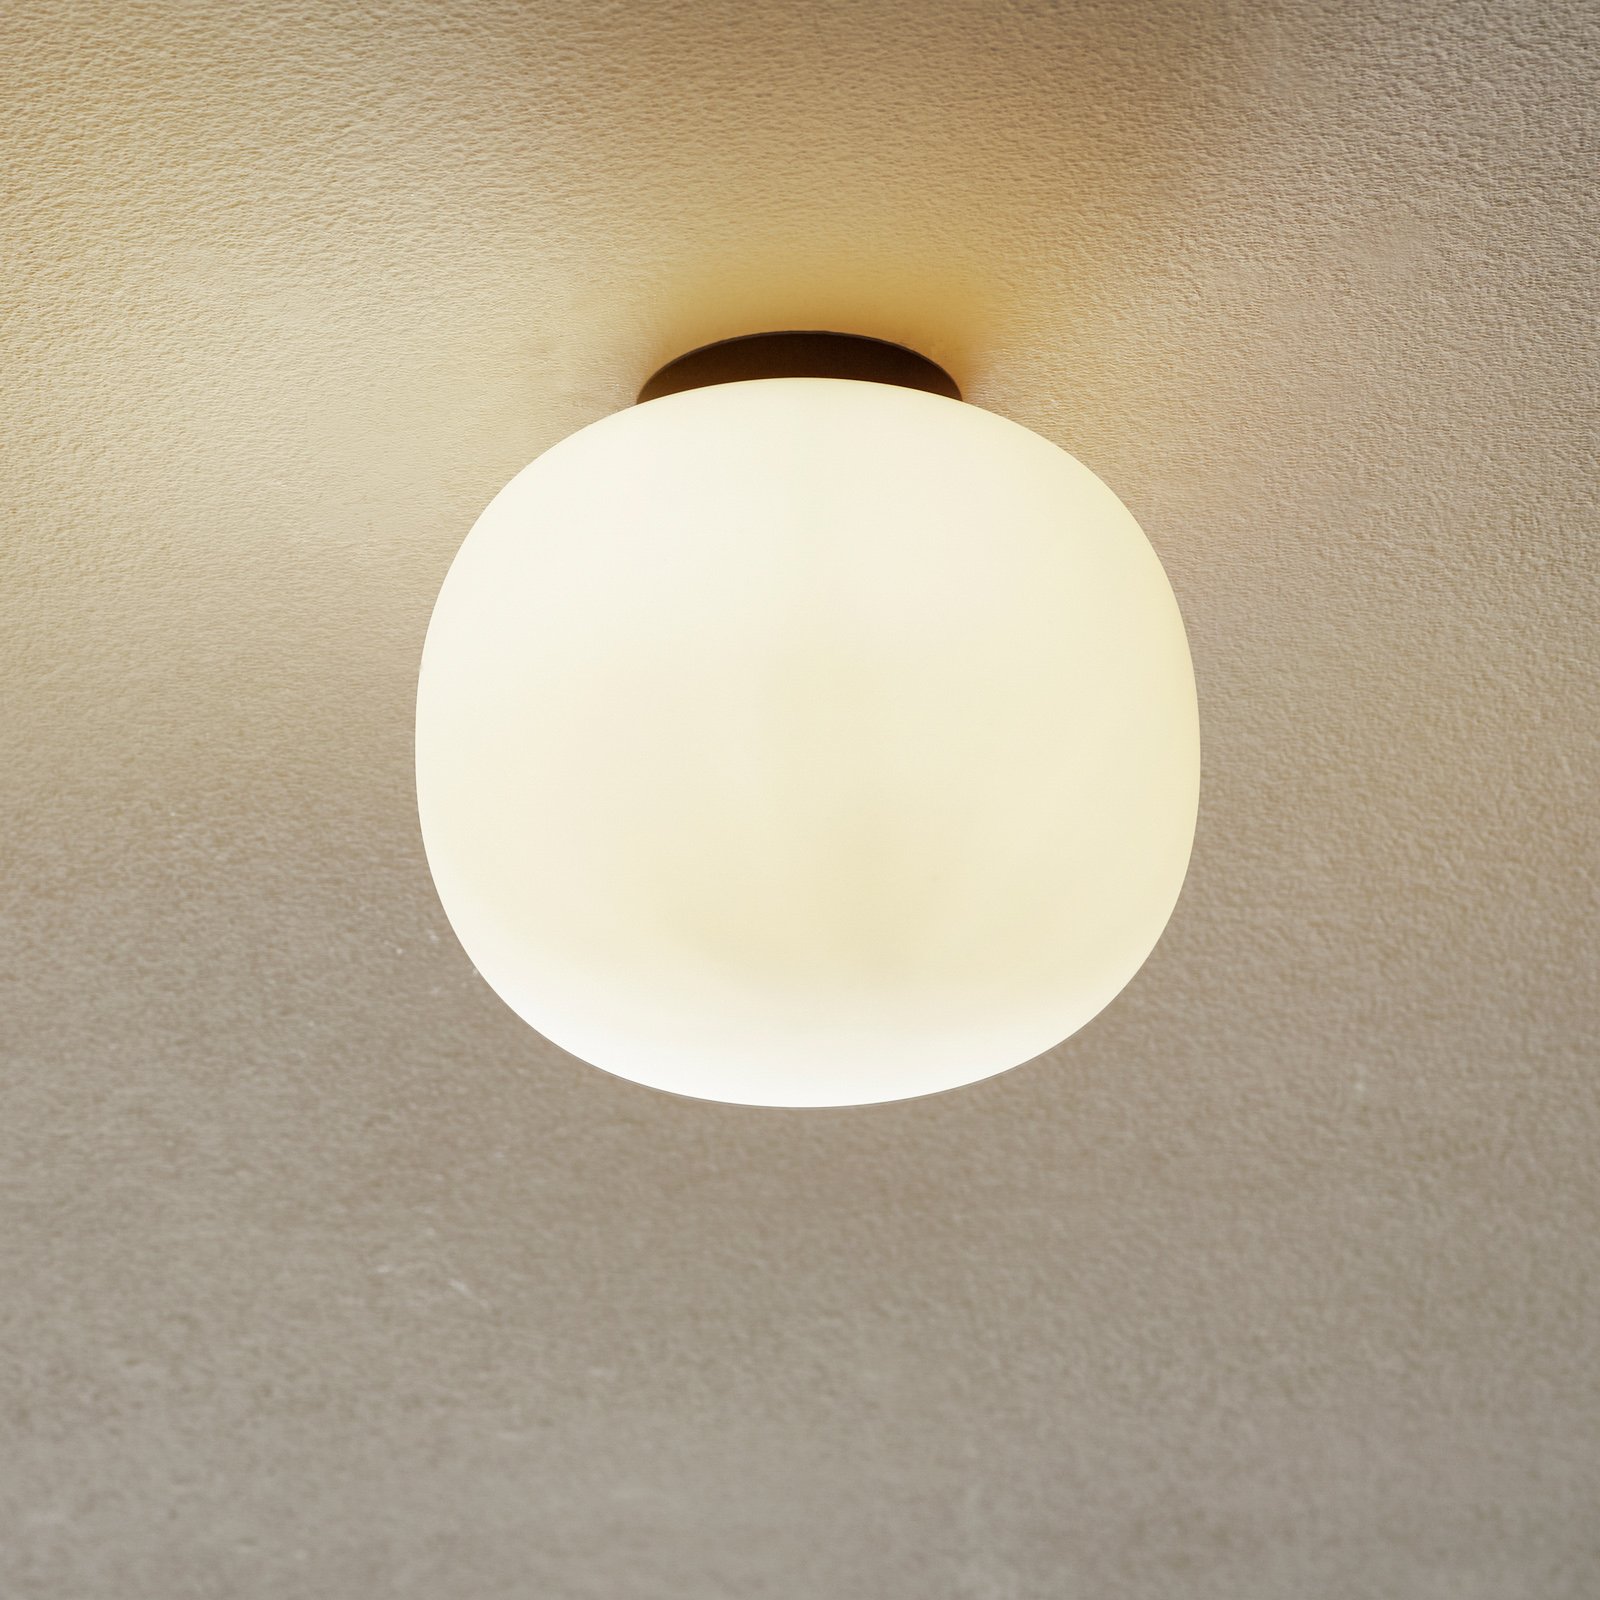 Bombo ceiling light, frosted glass Ø 19 cm